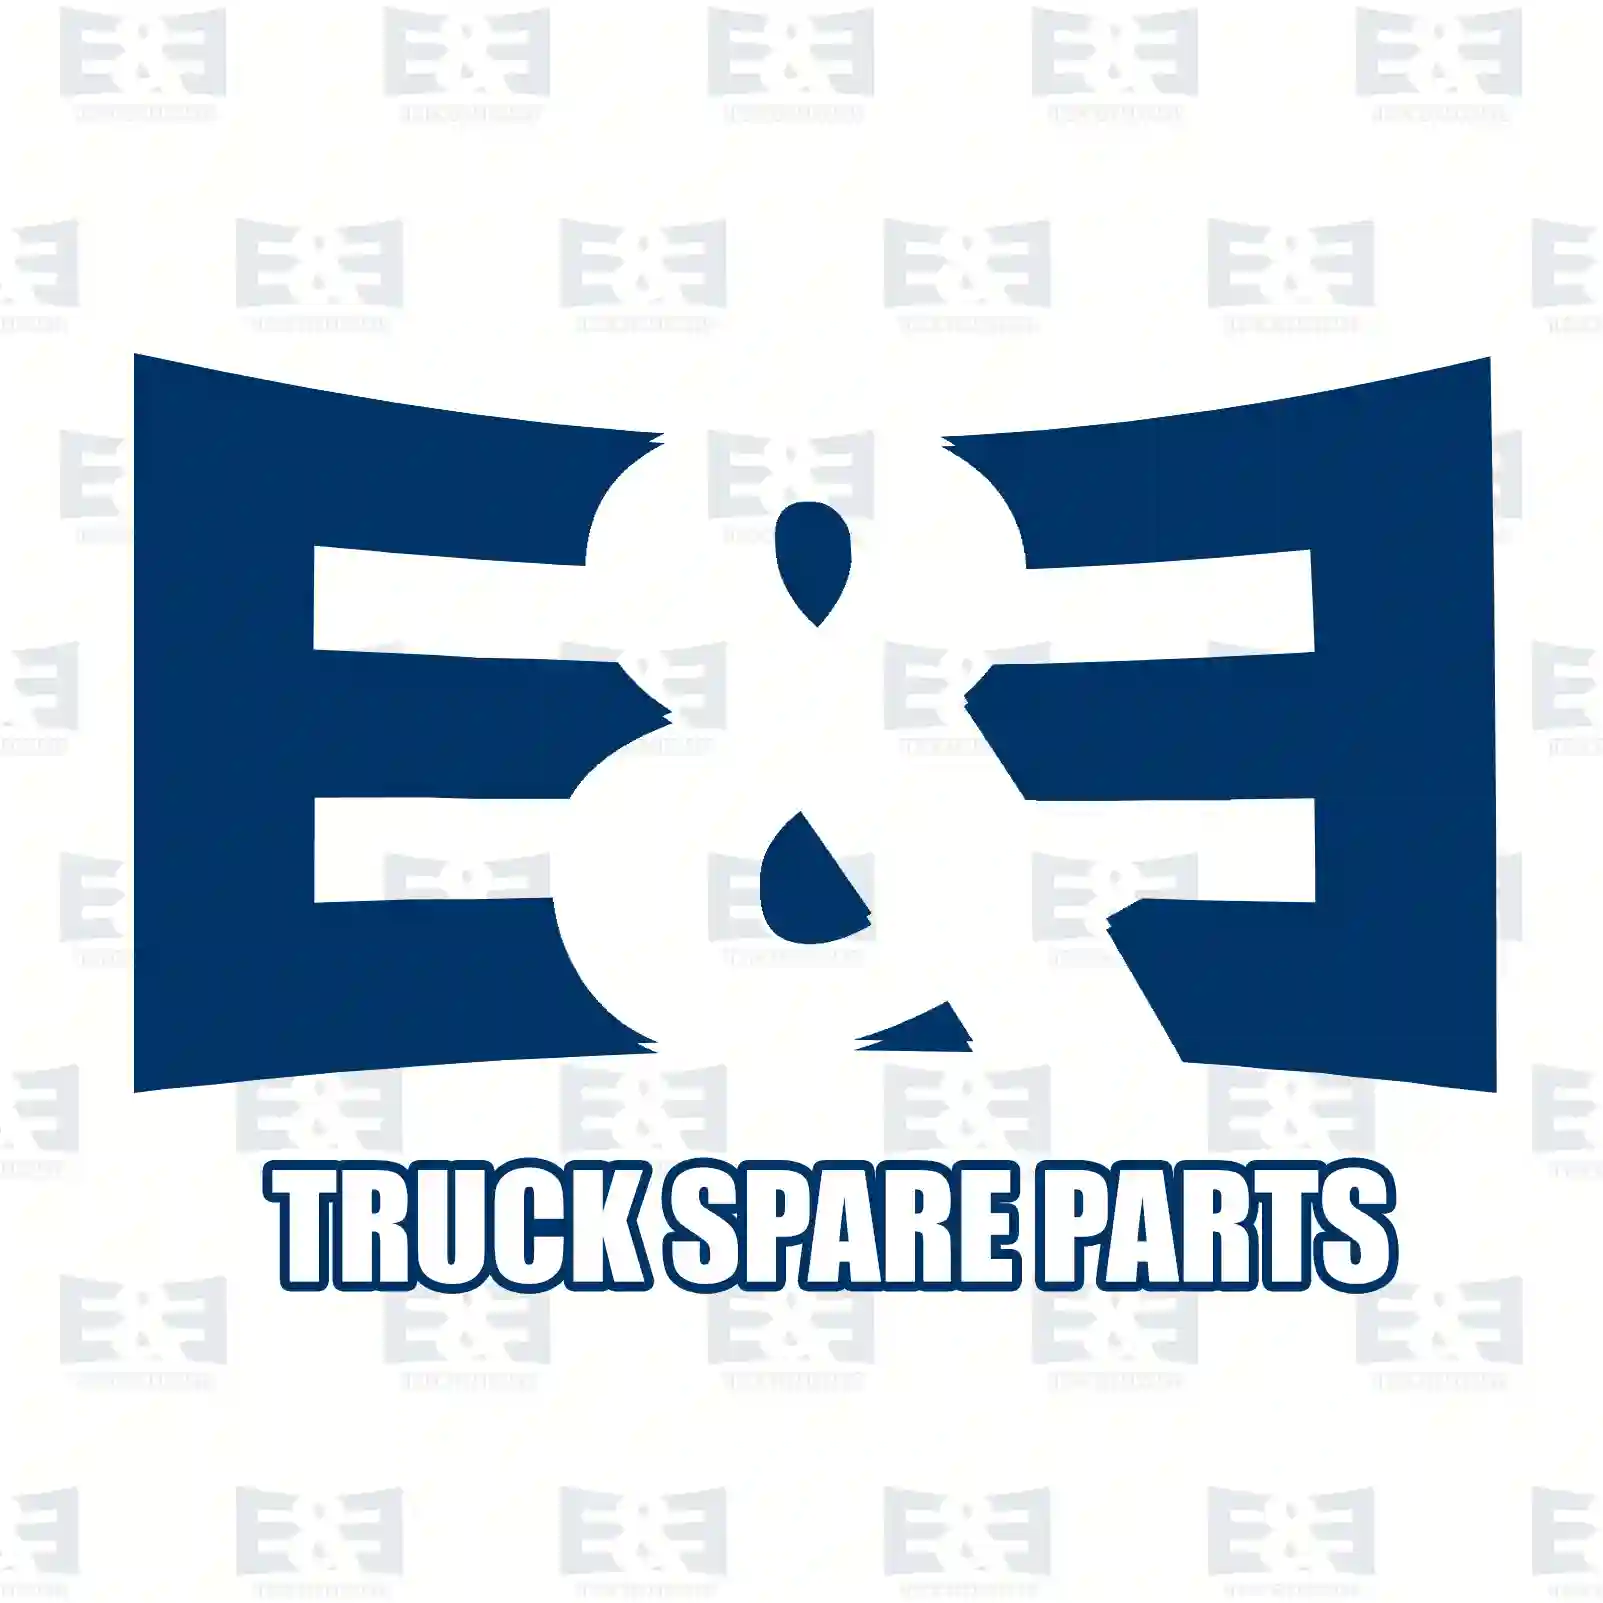 Ball joint, 2E2279362, 5010133895 ||  2E2279362 E&E Truck Spare Parts | Truck Spare Parts, Auotomotive Spare Parts Ball joint, 2E2279362, 5010133895 ||  2E2279362 E&E Truck Spare Parts | Truck Spare Parts, Auotomotive Spare Parts